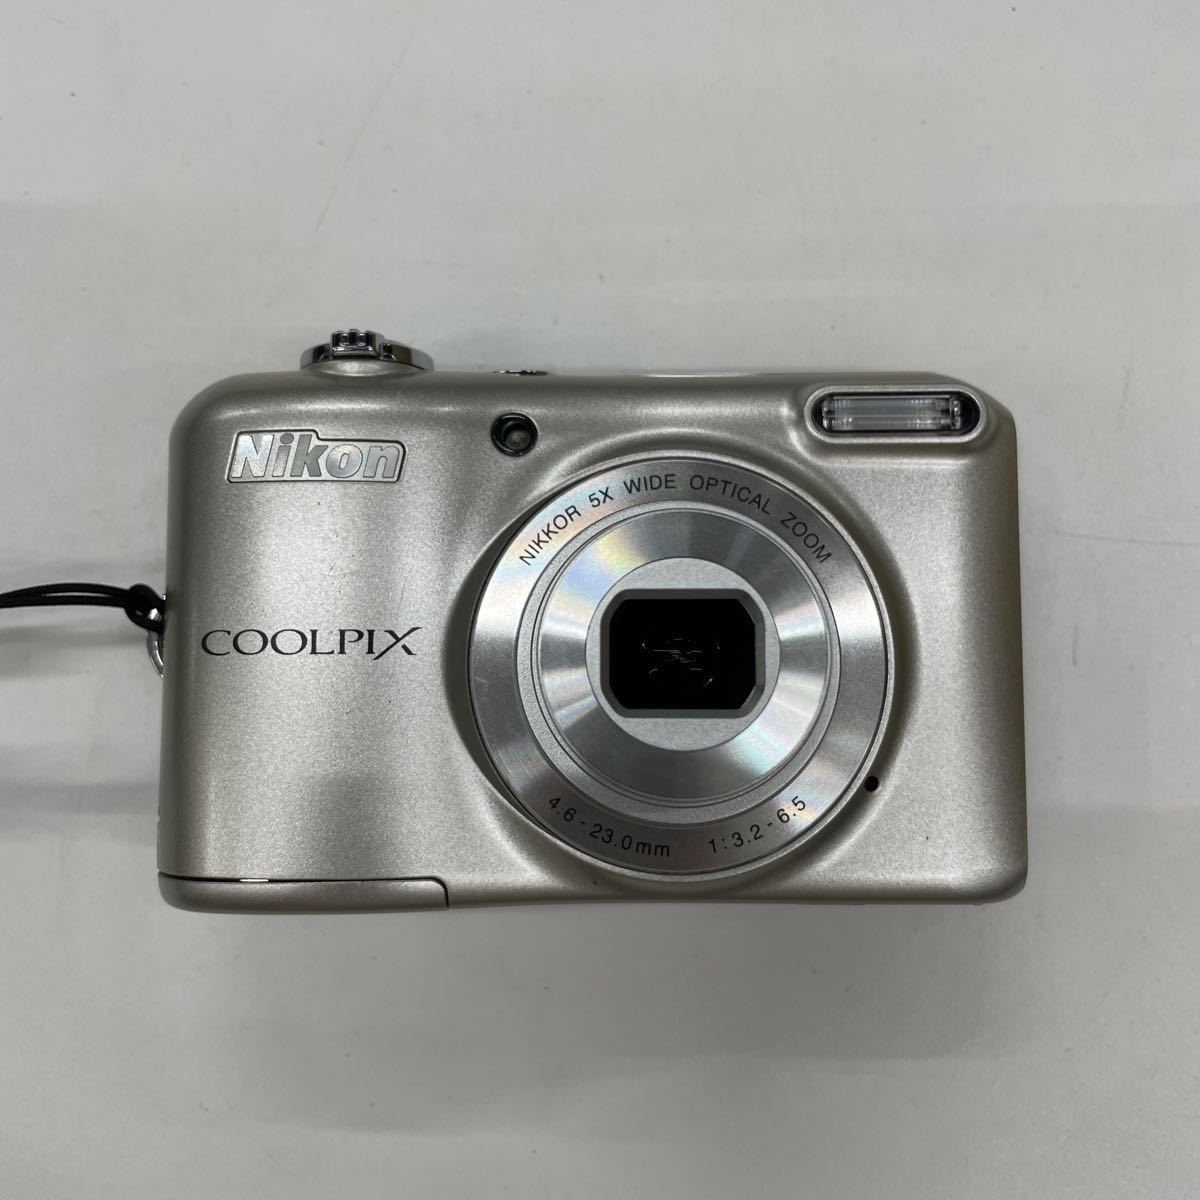 A6/【良品】Nikon デジタルカメラ COOLPIX L28 5X wide 4.6 - 23.0mm 1:3.2 - 6.5 ニコン デジカメ _画像5